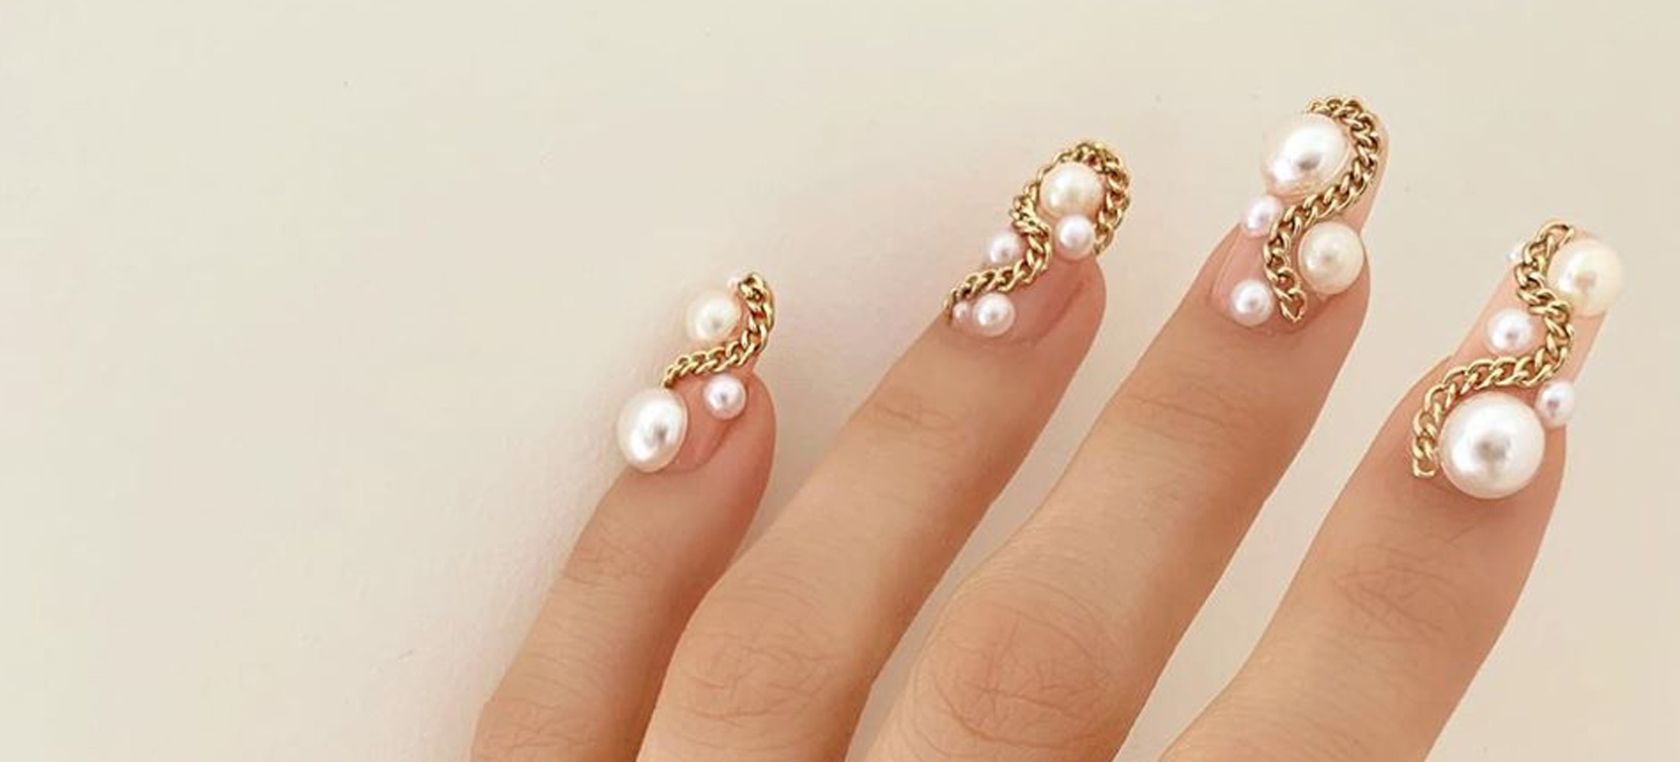 El diseño de uñas con perlas para las manos llega como nueva tendencia de n...